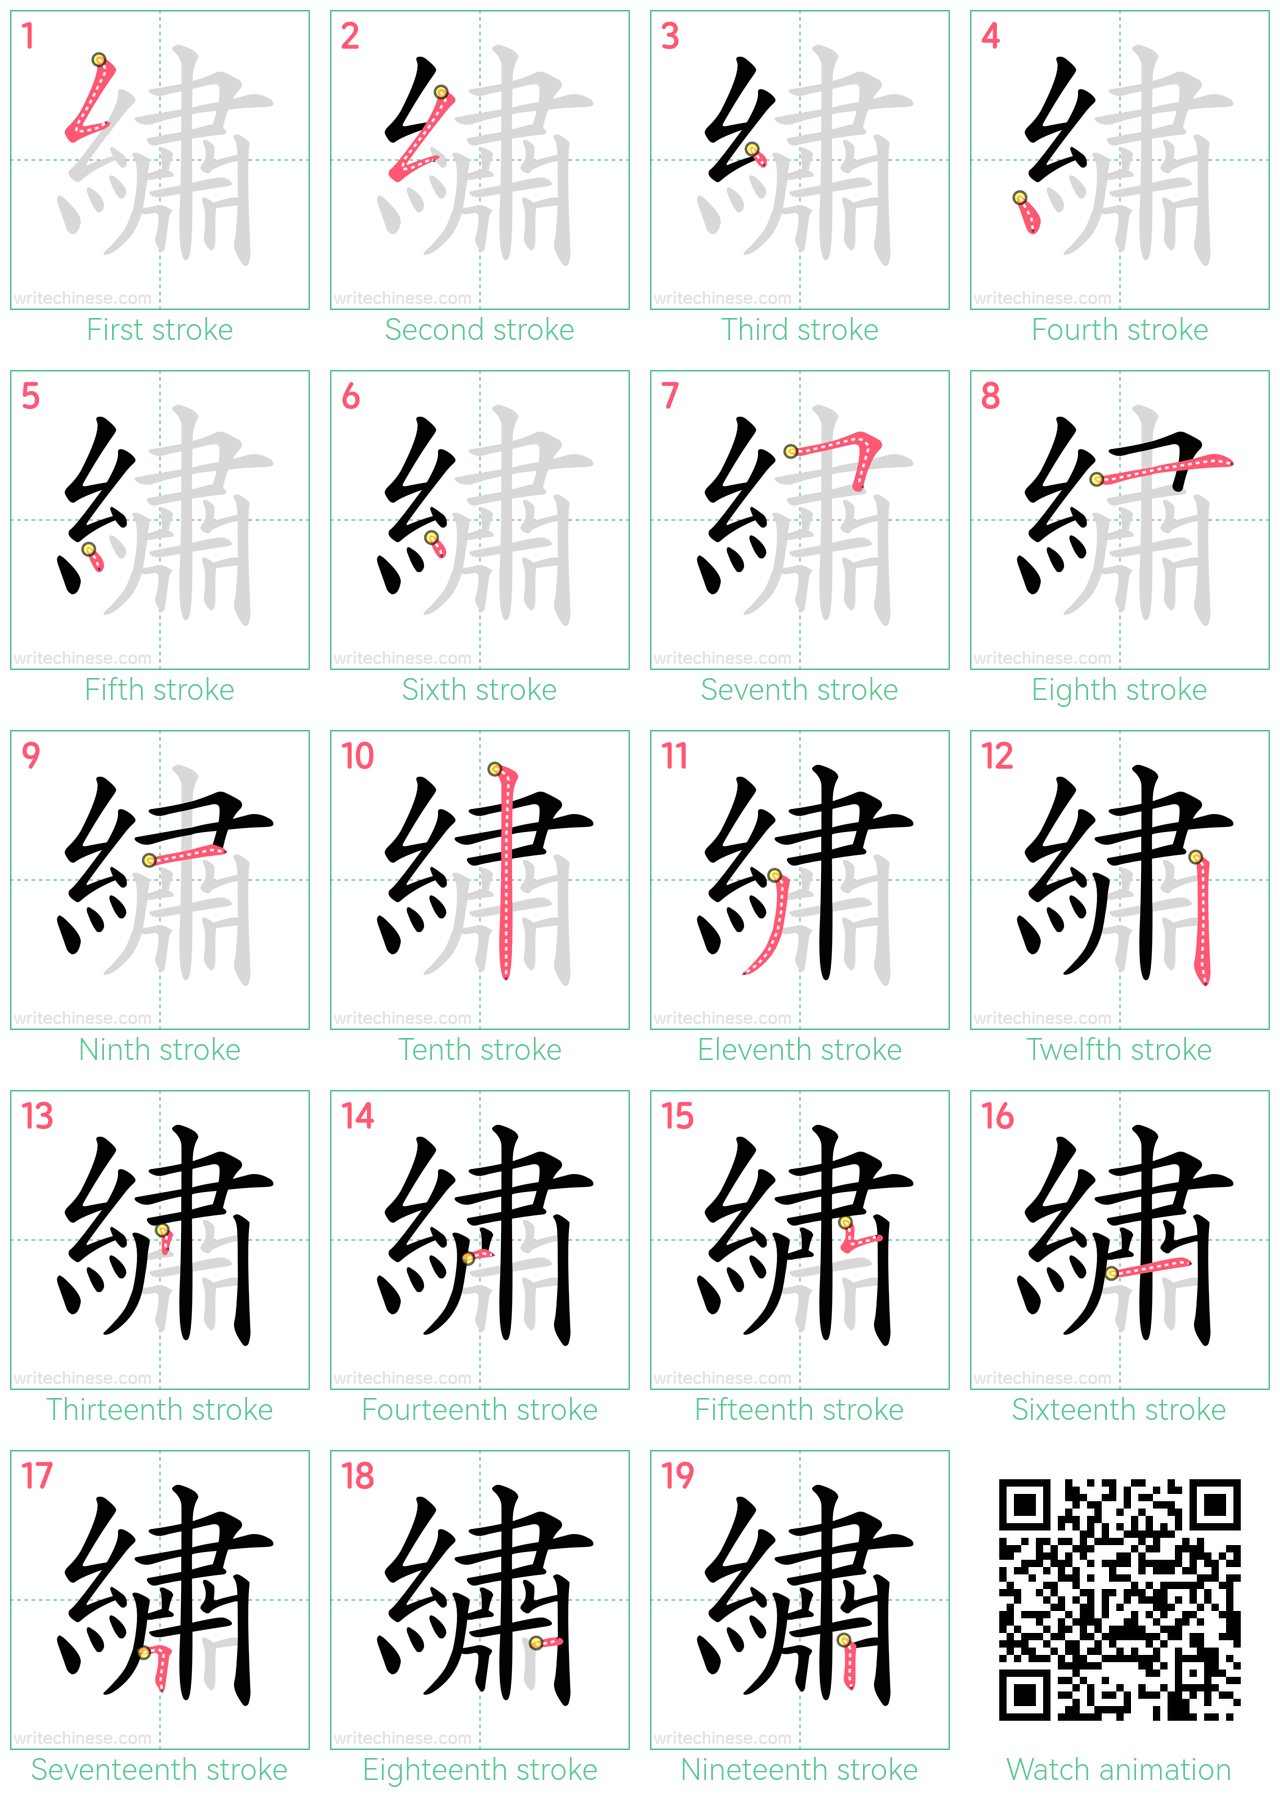 繡 step-by-step stroke order diagrams